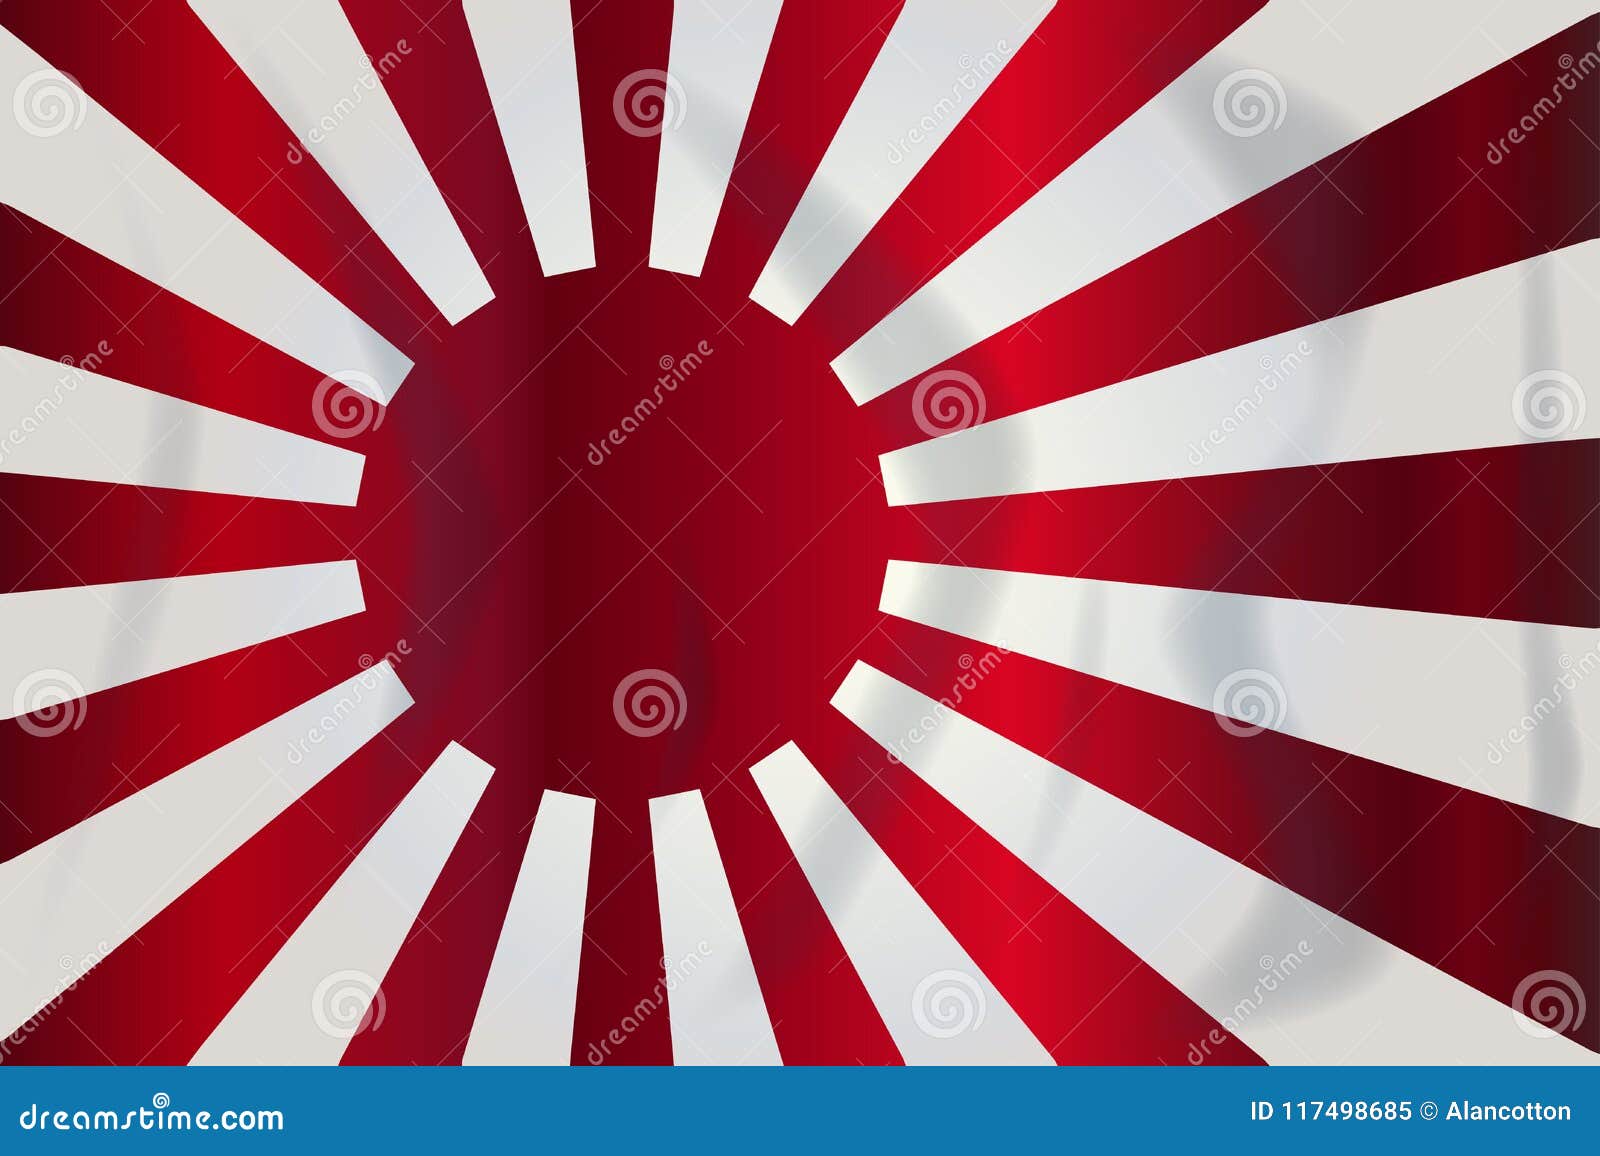 Japanese Rising Sun Flag vector. Illustration of -